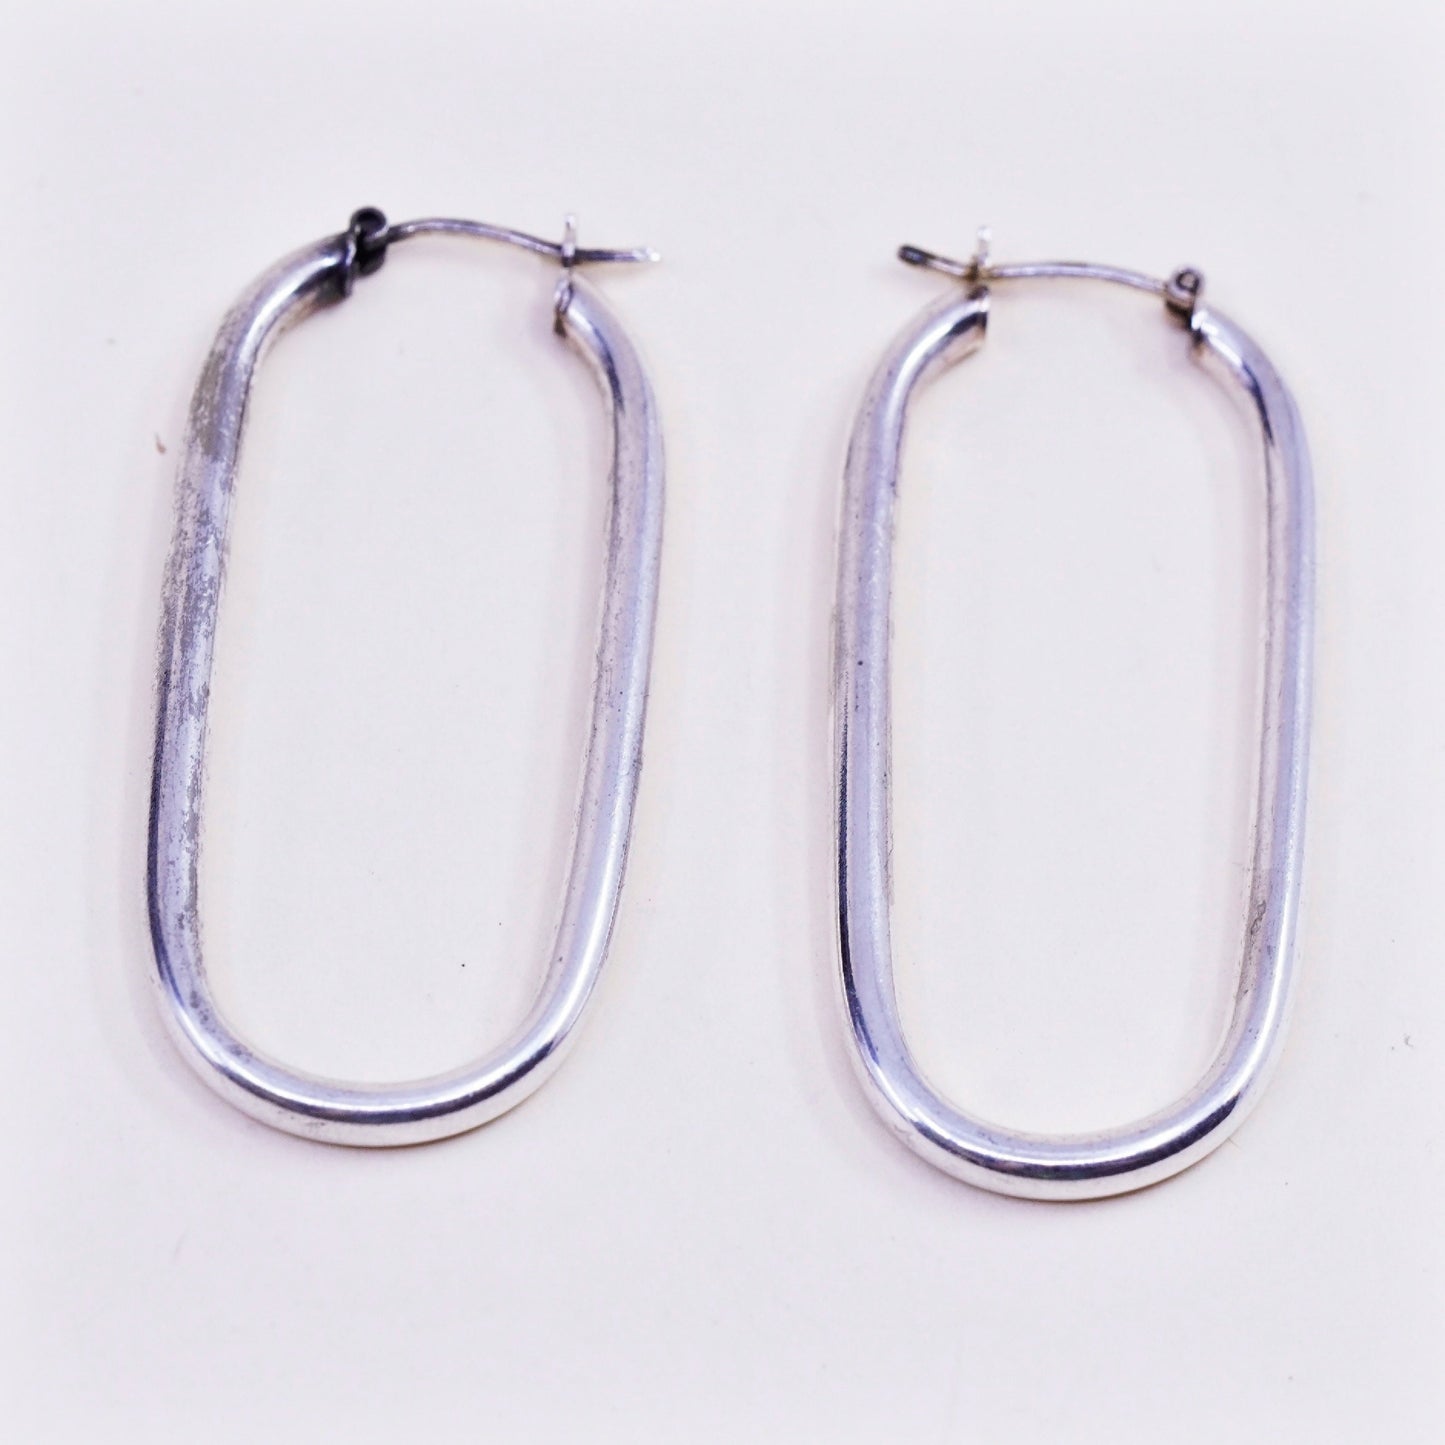 2” Vintage sterling silver loop earrings rectangular minimalist primitive hoops